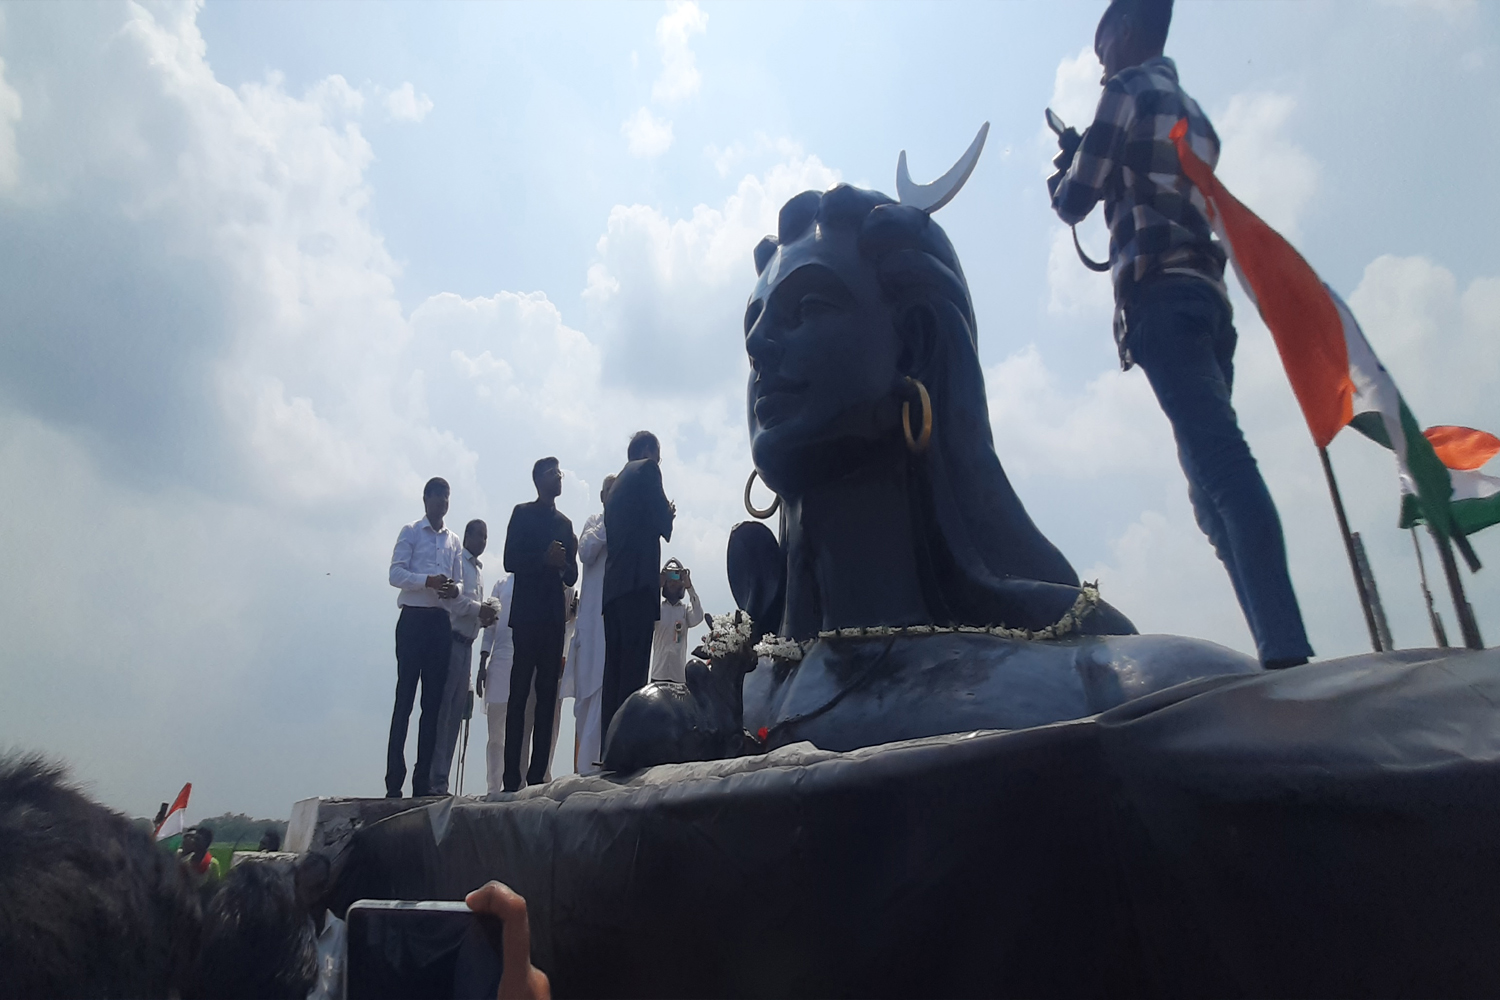  अमृत सरोवर के मध्य डीएम के हाथों स्थापित की गई भगवान शिव की प्रतिमा